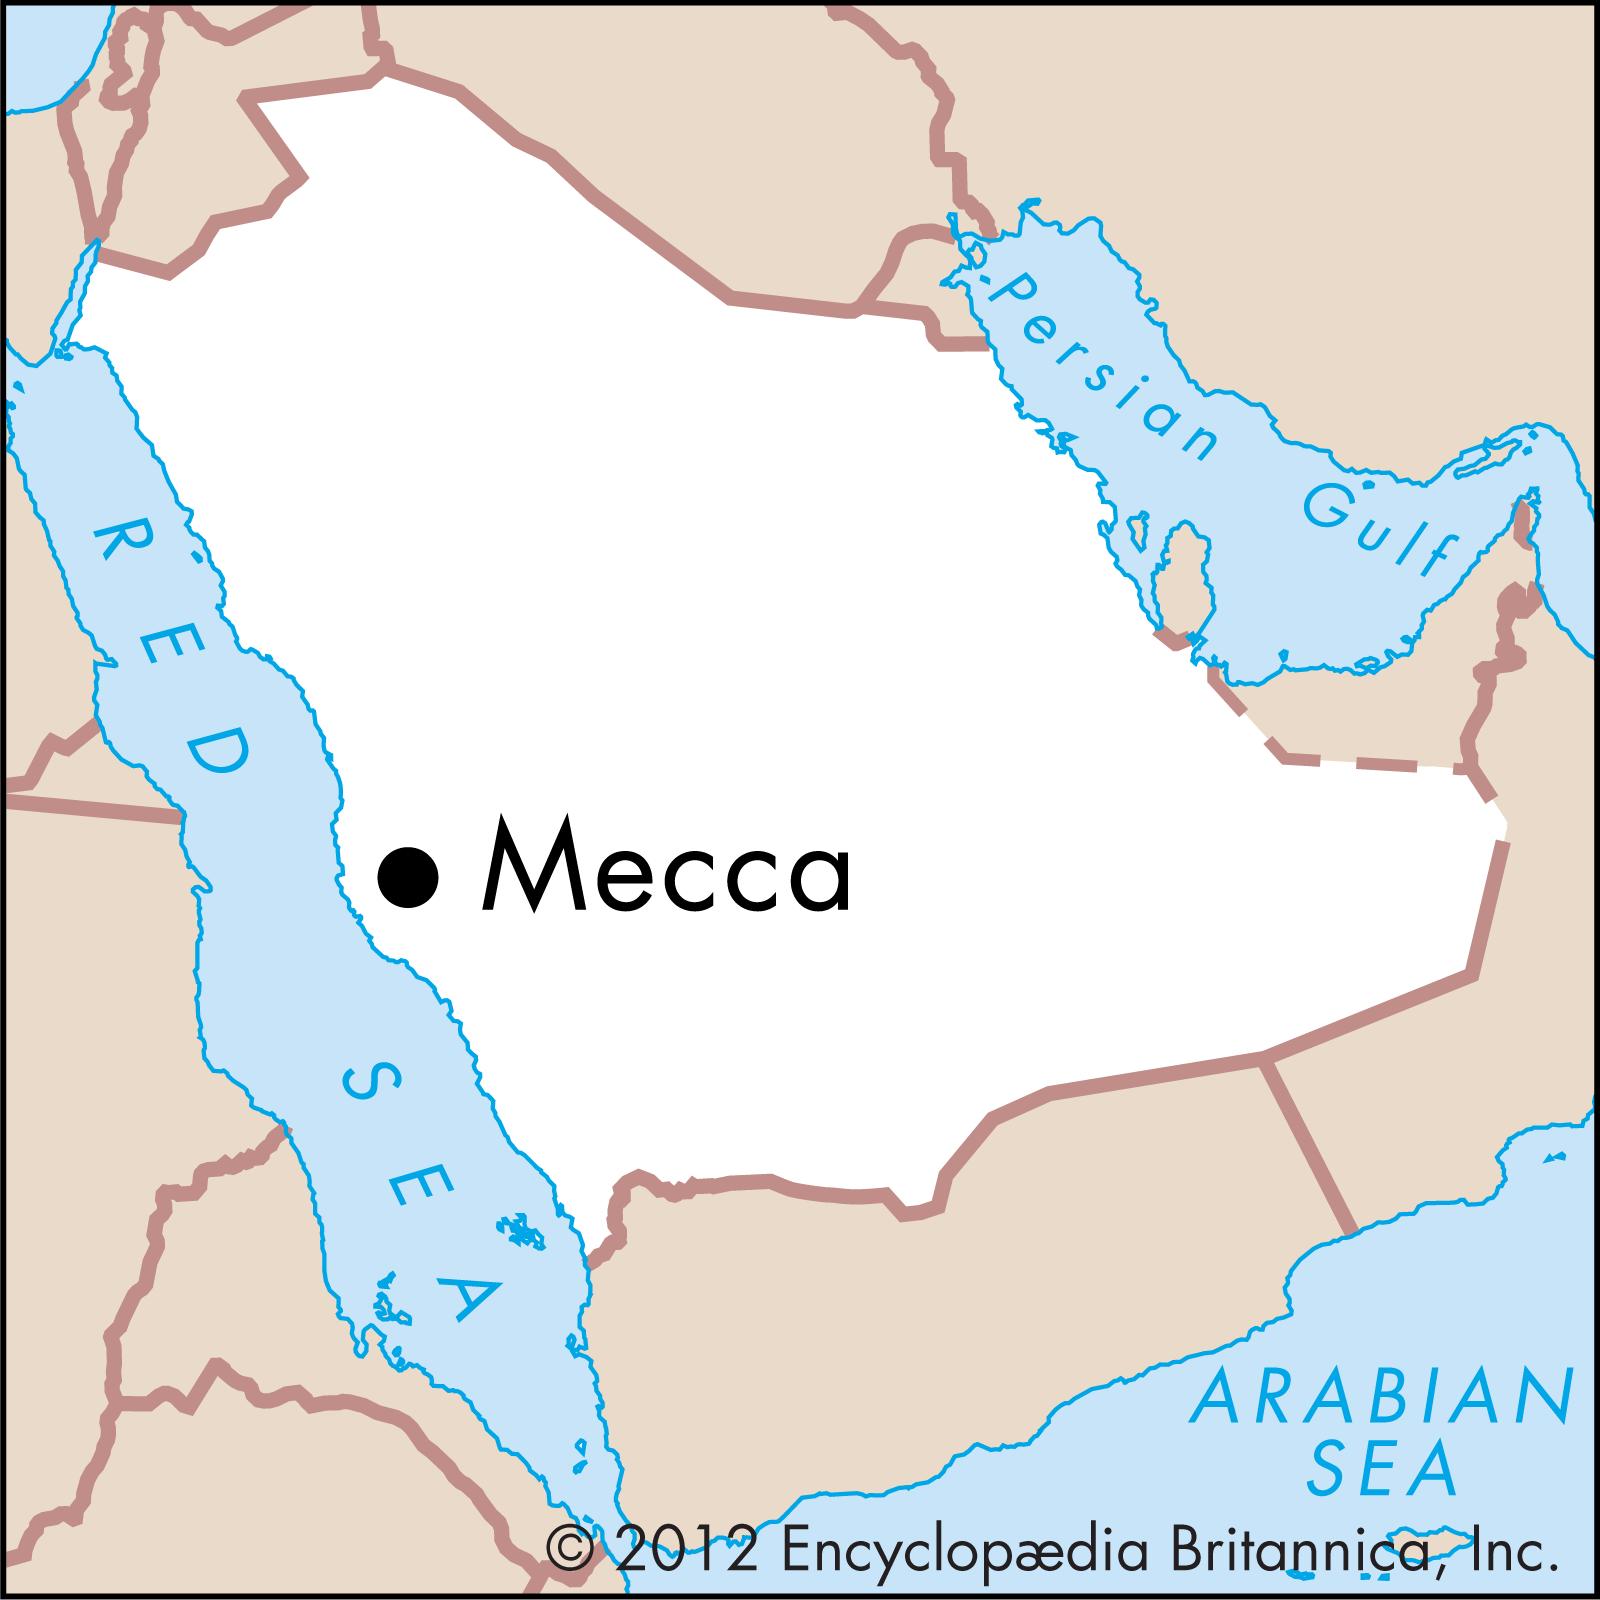 Саудовская аравия расположена. Священные города мусульман Мекка и Медина на карте. Мекка на карте Саудовской Аравии. Города мусульман Мекка и Медина на карте.